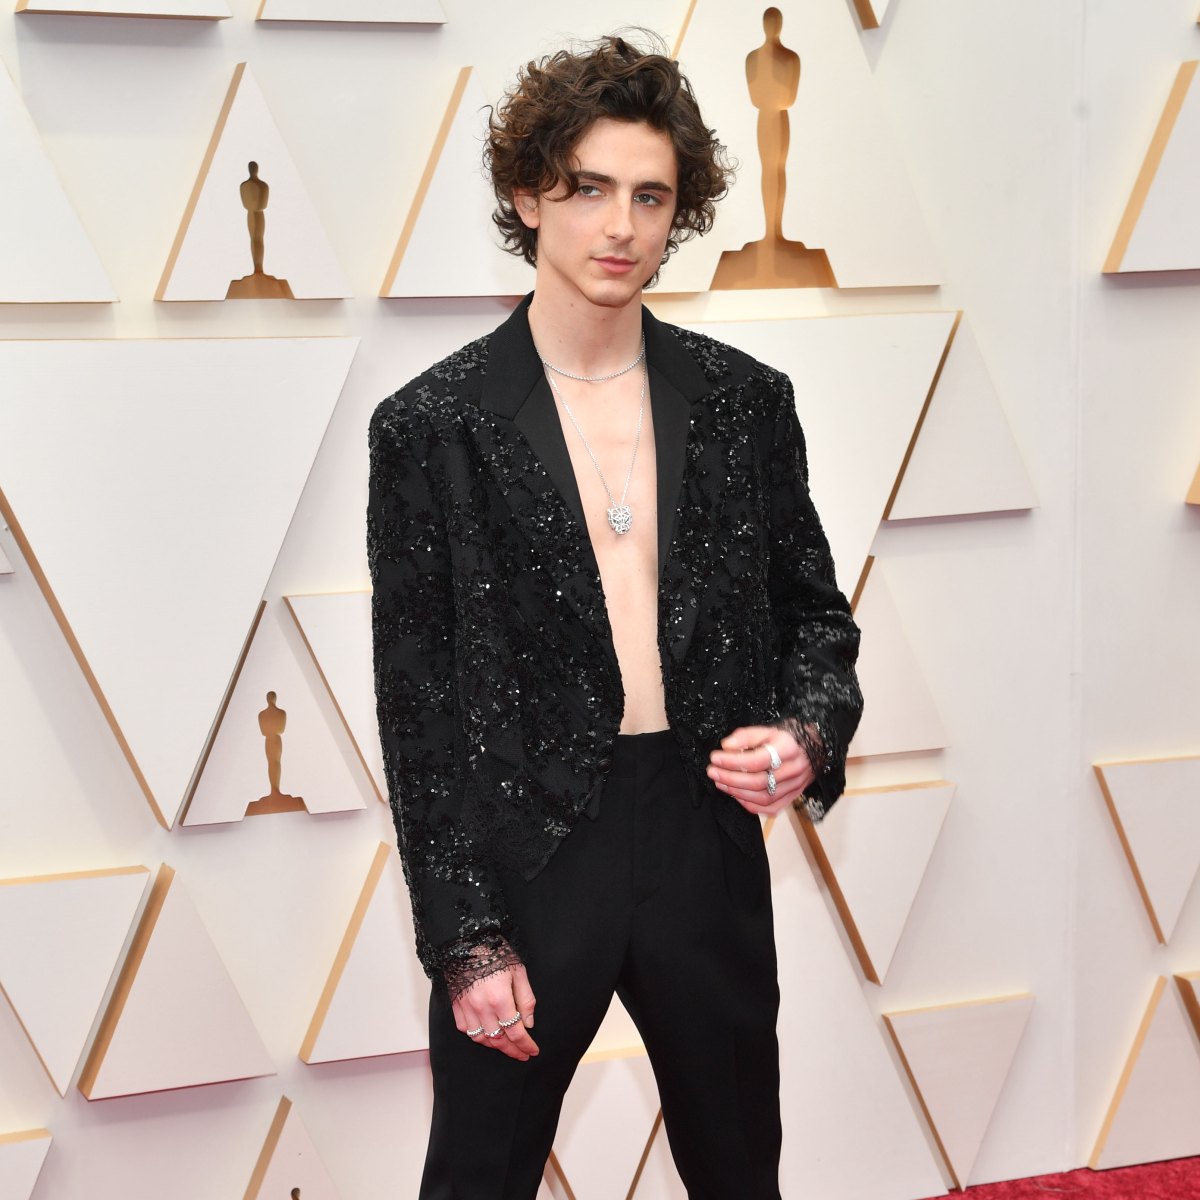 Timothée Chalamet Showed Up Shirtless at the Oscars